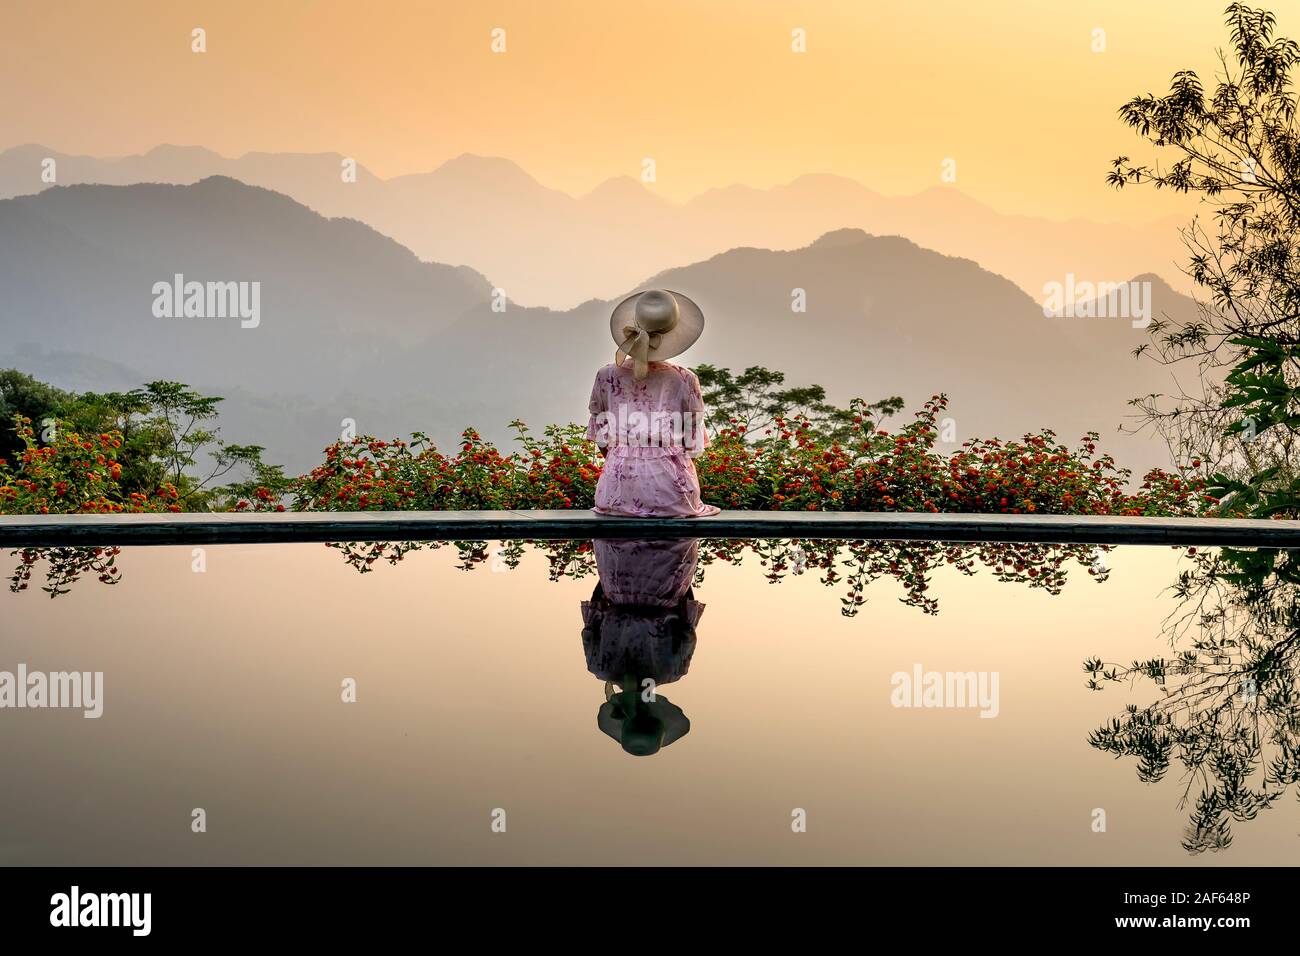 Pu Luong comune, Thanh Hoa provincia, Vietnam - Ottobre 1, 2019: donna asiatica nel vestire in piedi sulla piscina infinity edge e natura scena. Reso di lusso Foto Stock